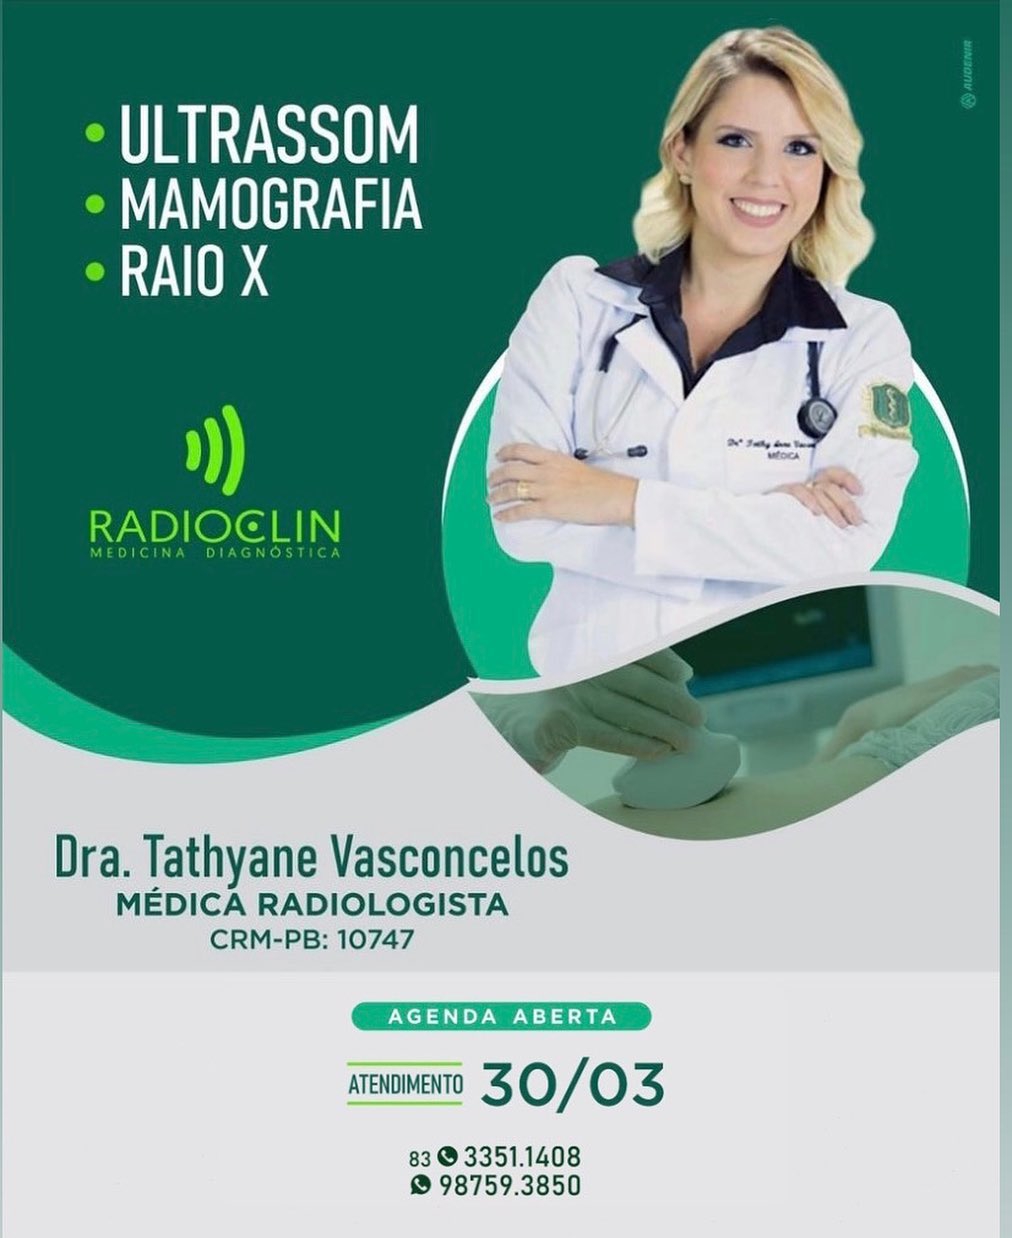 1450210291 Dra Tathyane Vasconcelos médica radiologista com agenda aberta hoje 30 de março na Radiolcin